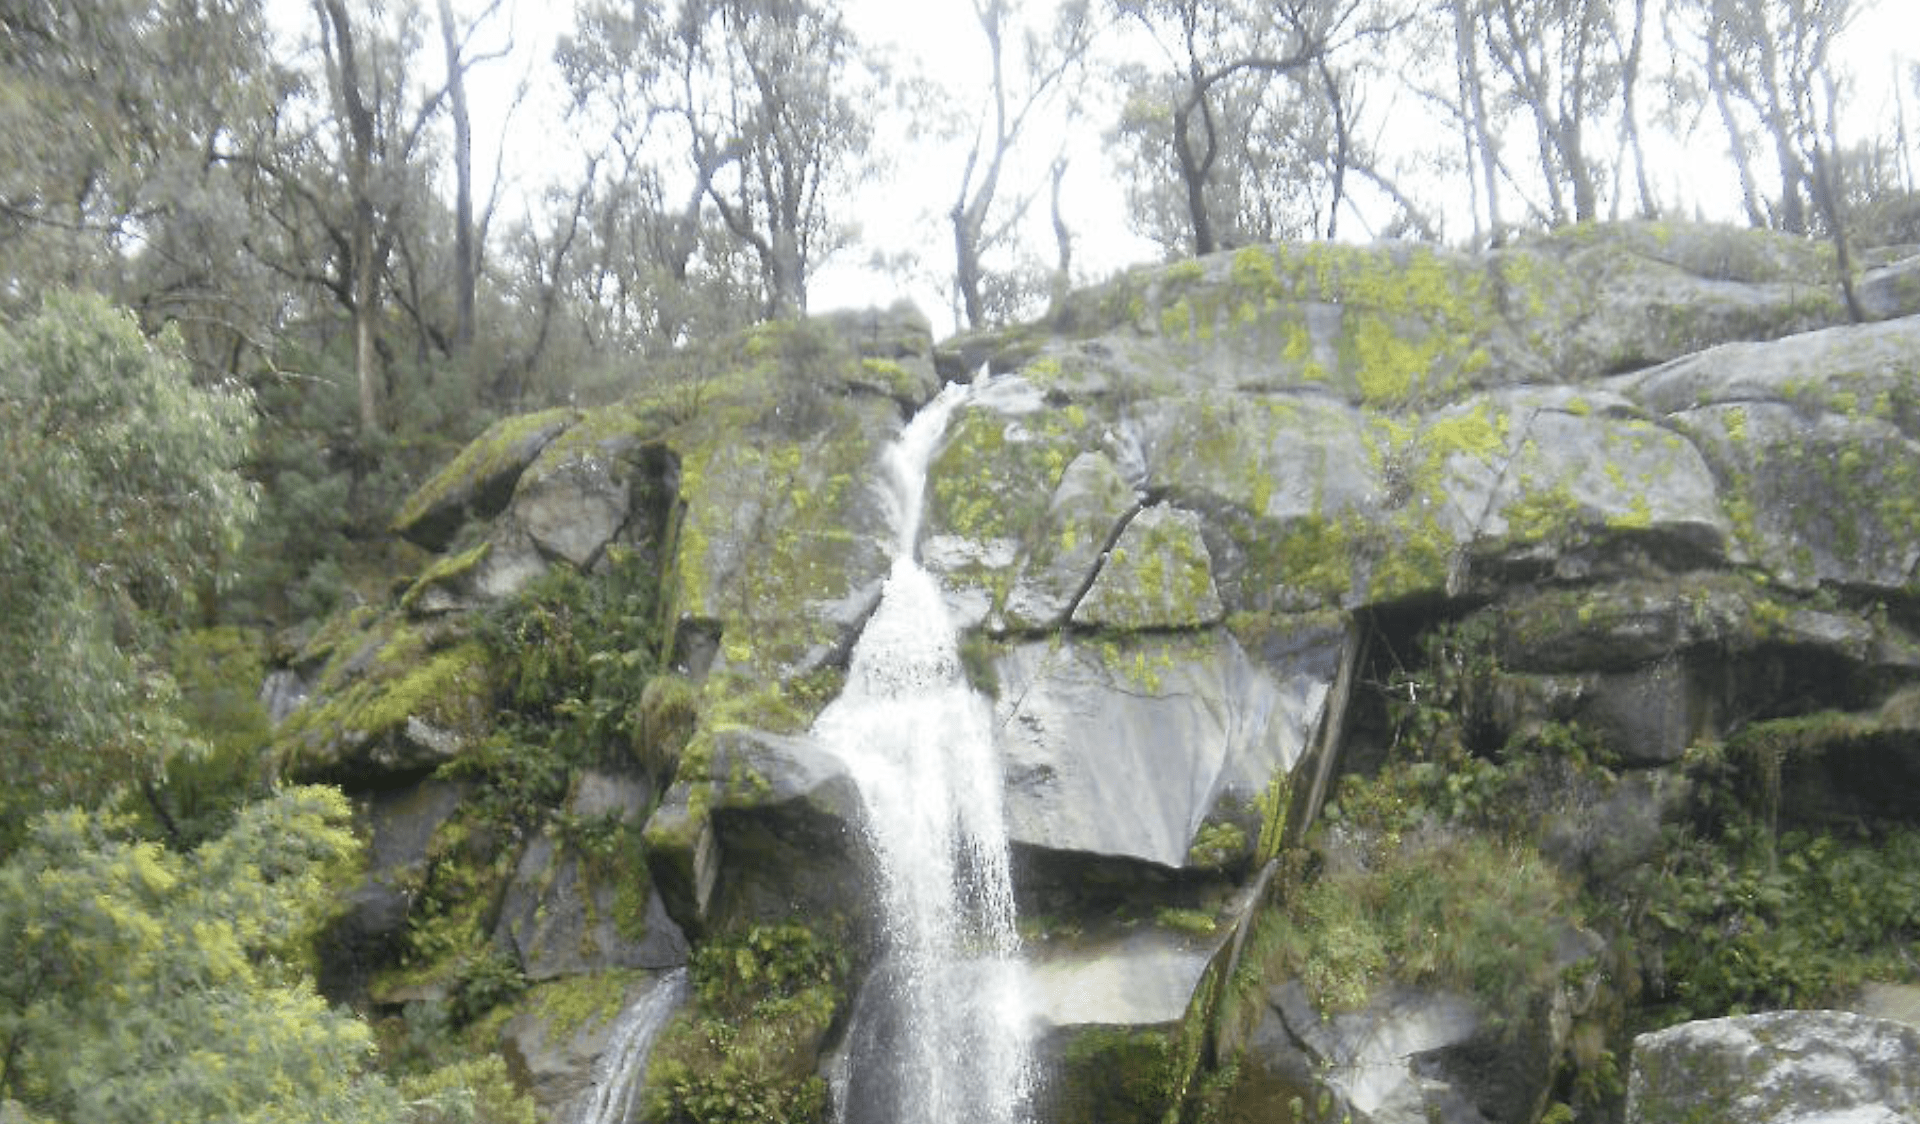 Granya Falls in Mount Granya State Park